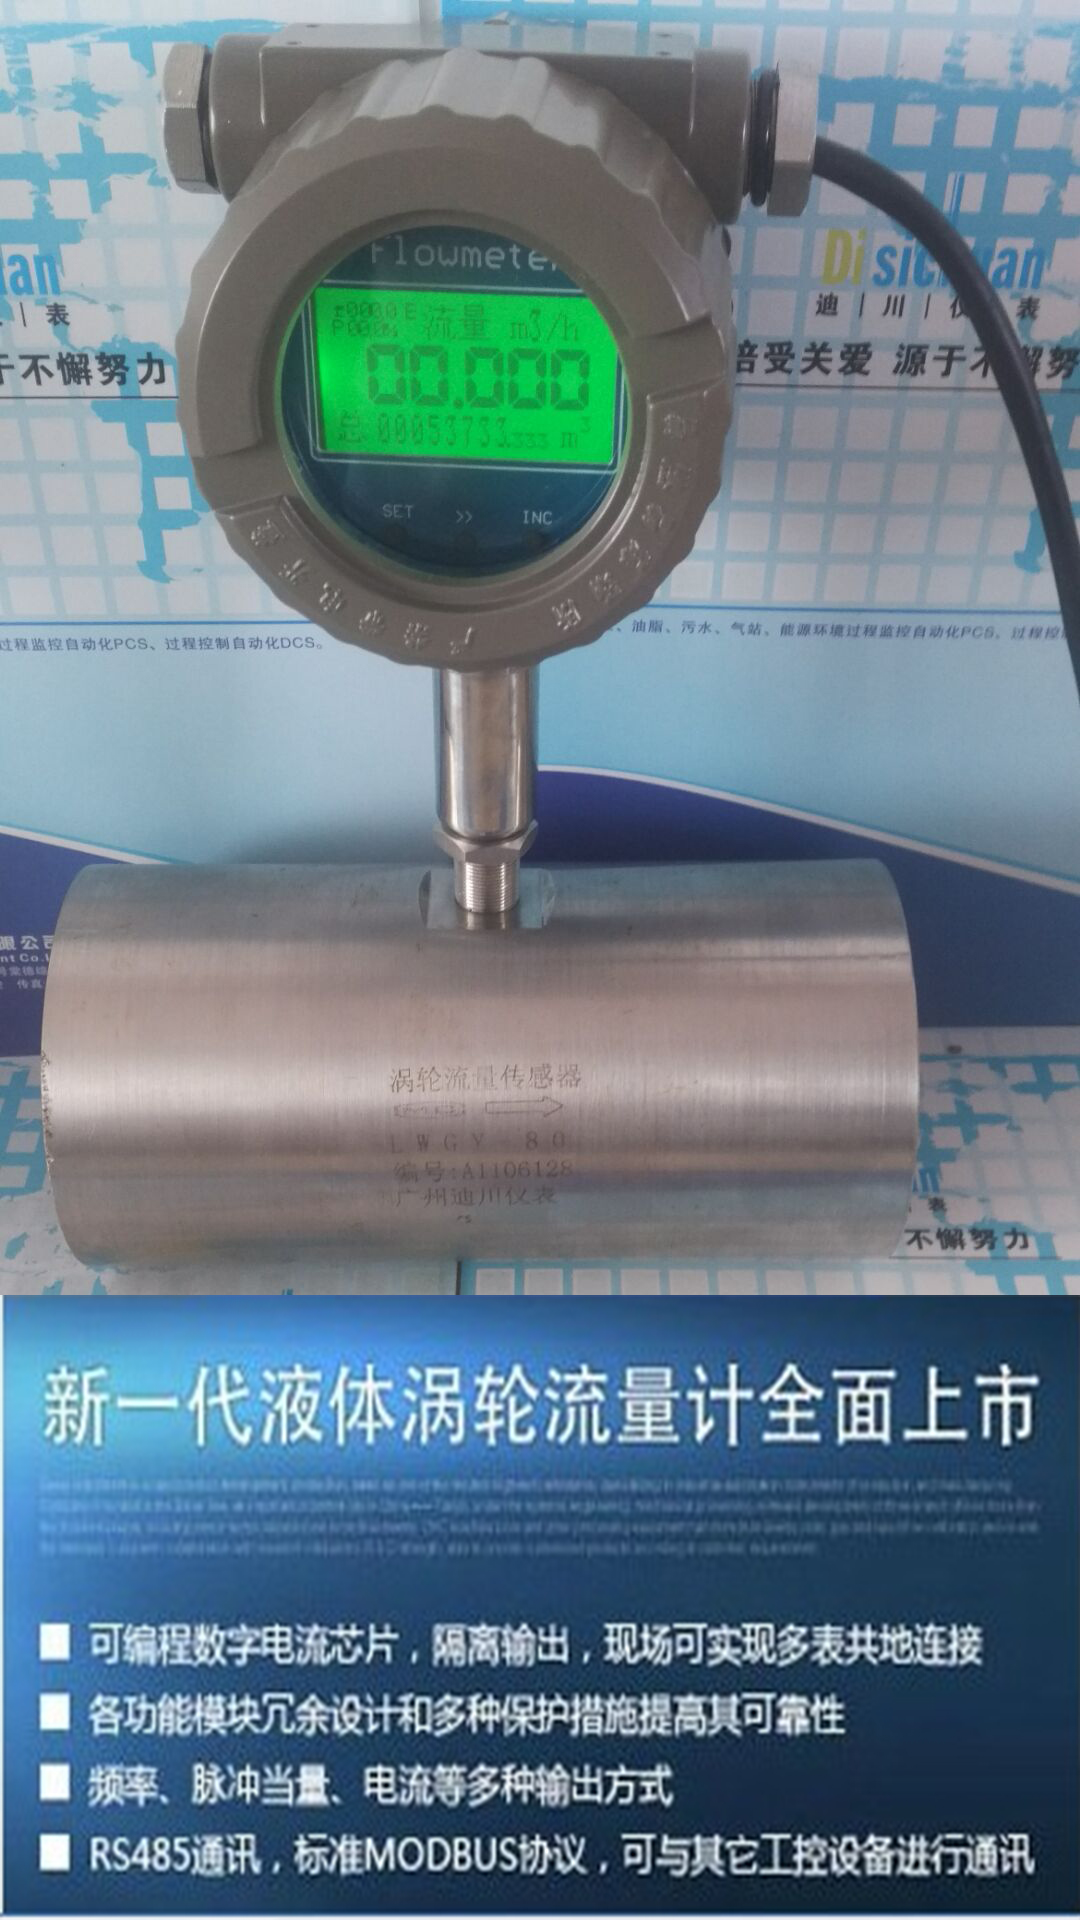 广州 自动化仪表有限公司 水流量计 广东广州液体涡轮流量计